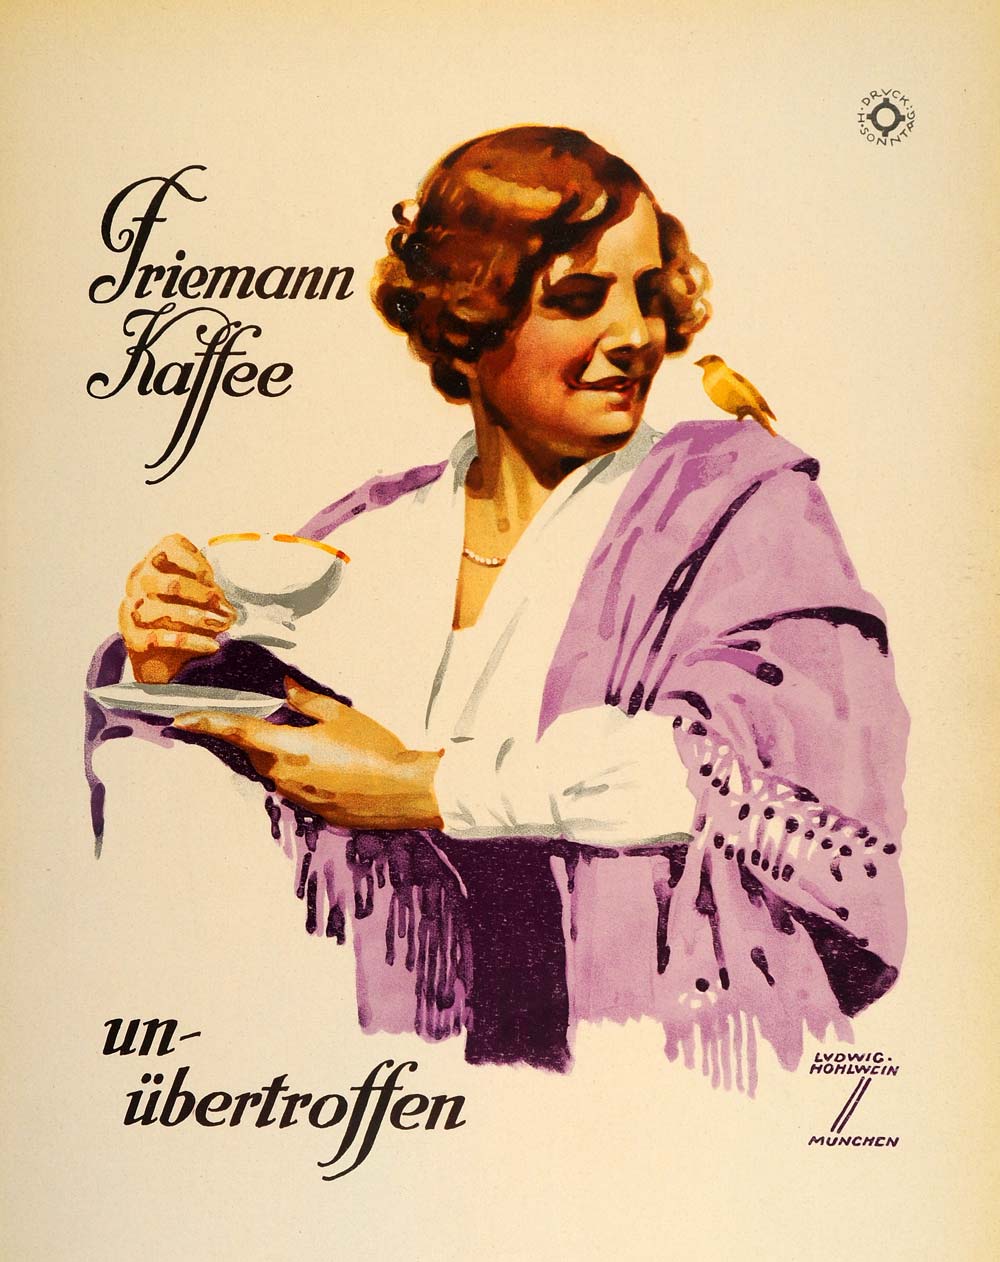 1926 Lithograph Hohlwein Friemann Kaffee Coffee German Poster Art Advertising